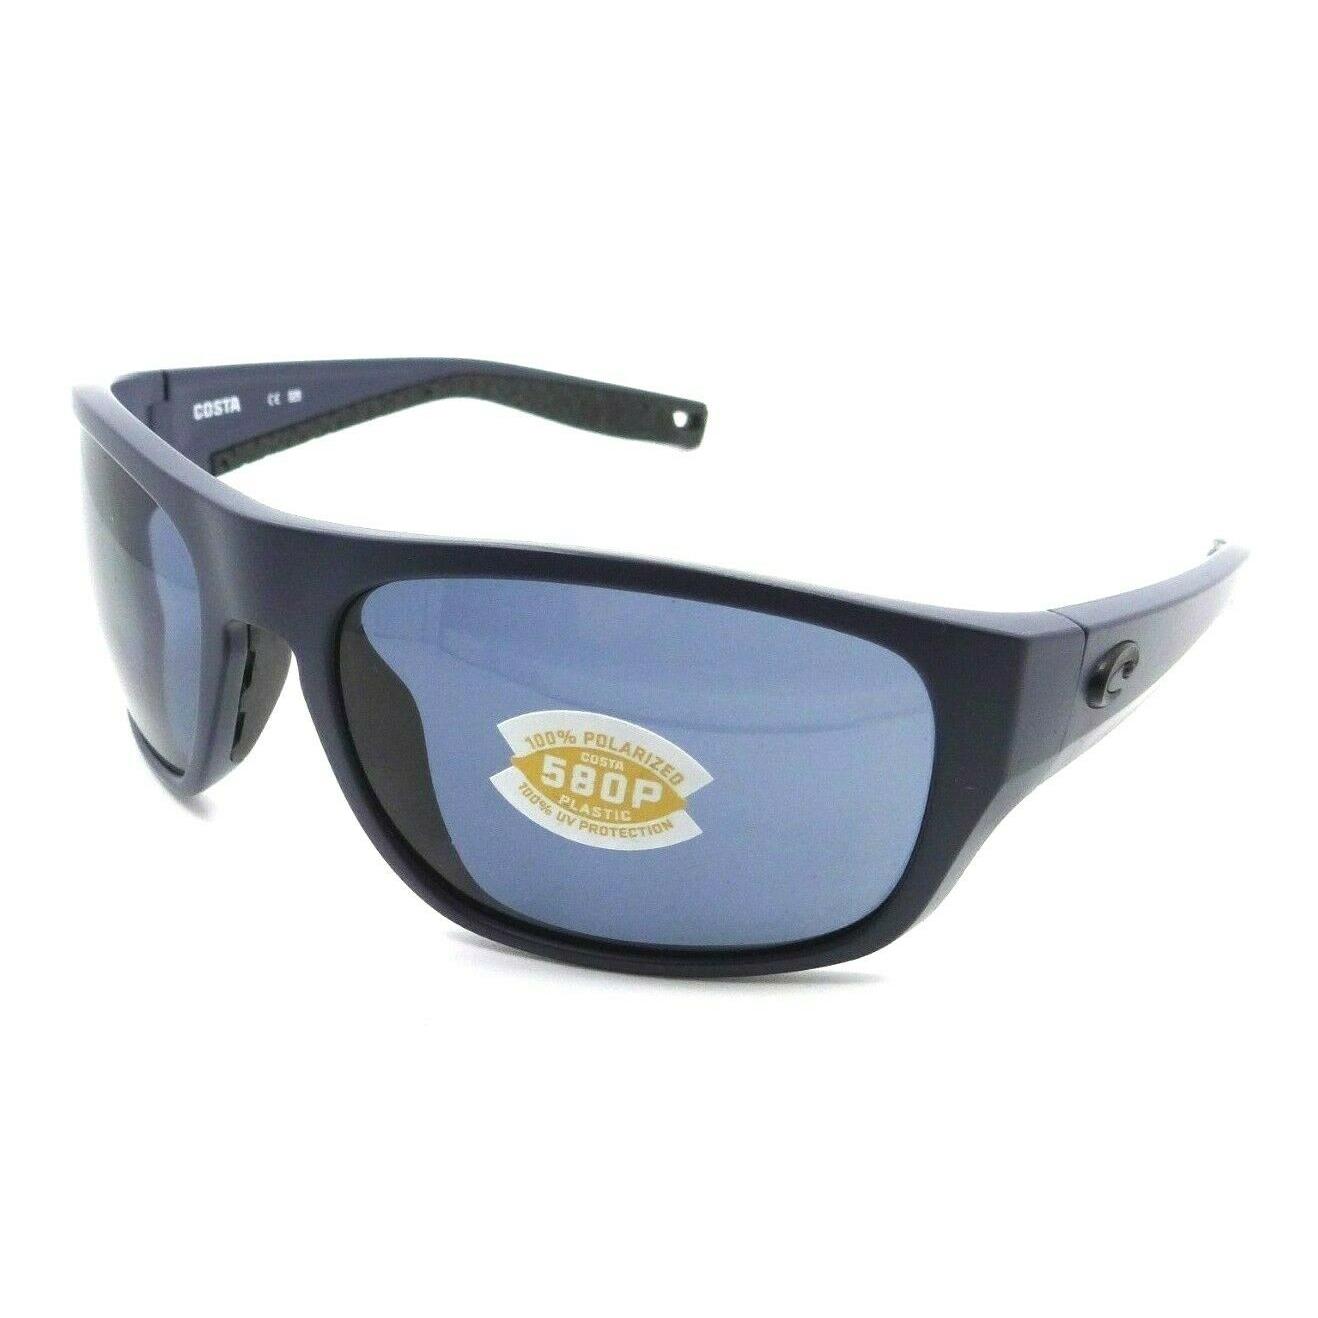 Costa Del Mar Sunglasses Tico Tco 14 60-17-119 Matte Midnight Blue / Gray 580P